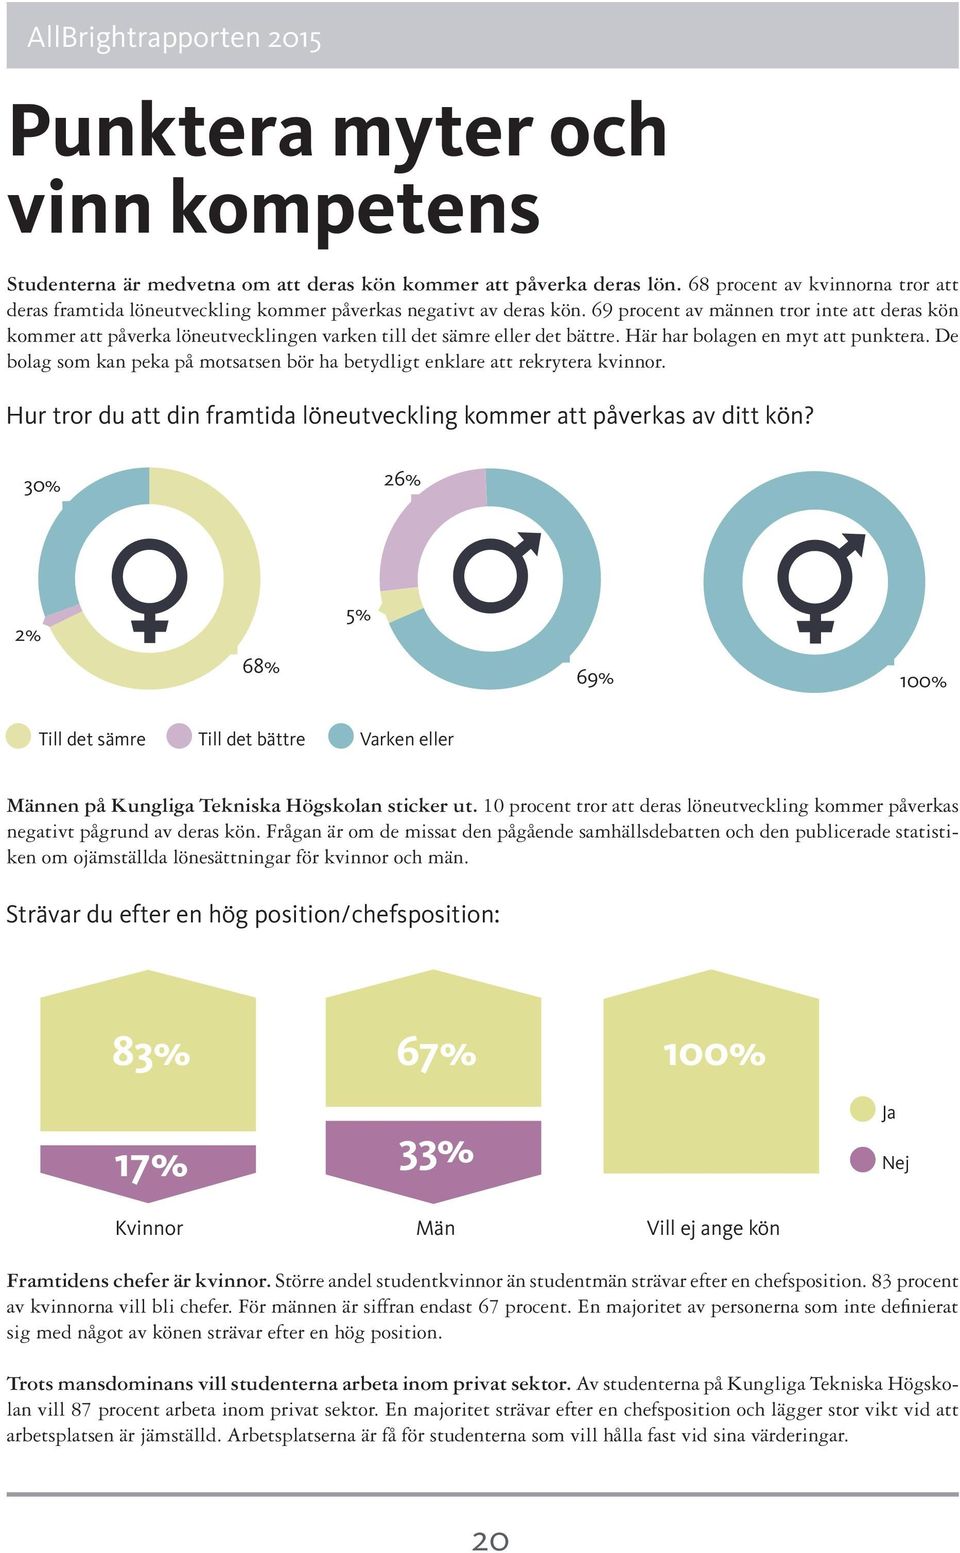 69 procent av männen tror inte att deras kön kommer att påverka löneutvecklingen varken till det sämre eller det bättre. Här har bolagen en myt att punktera.